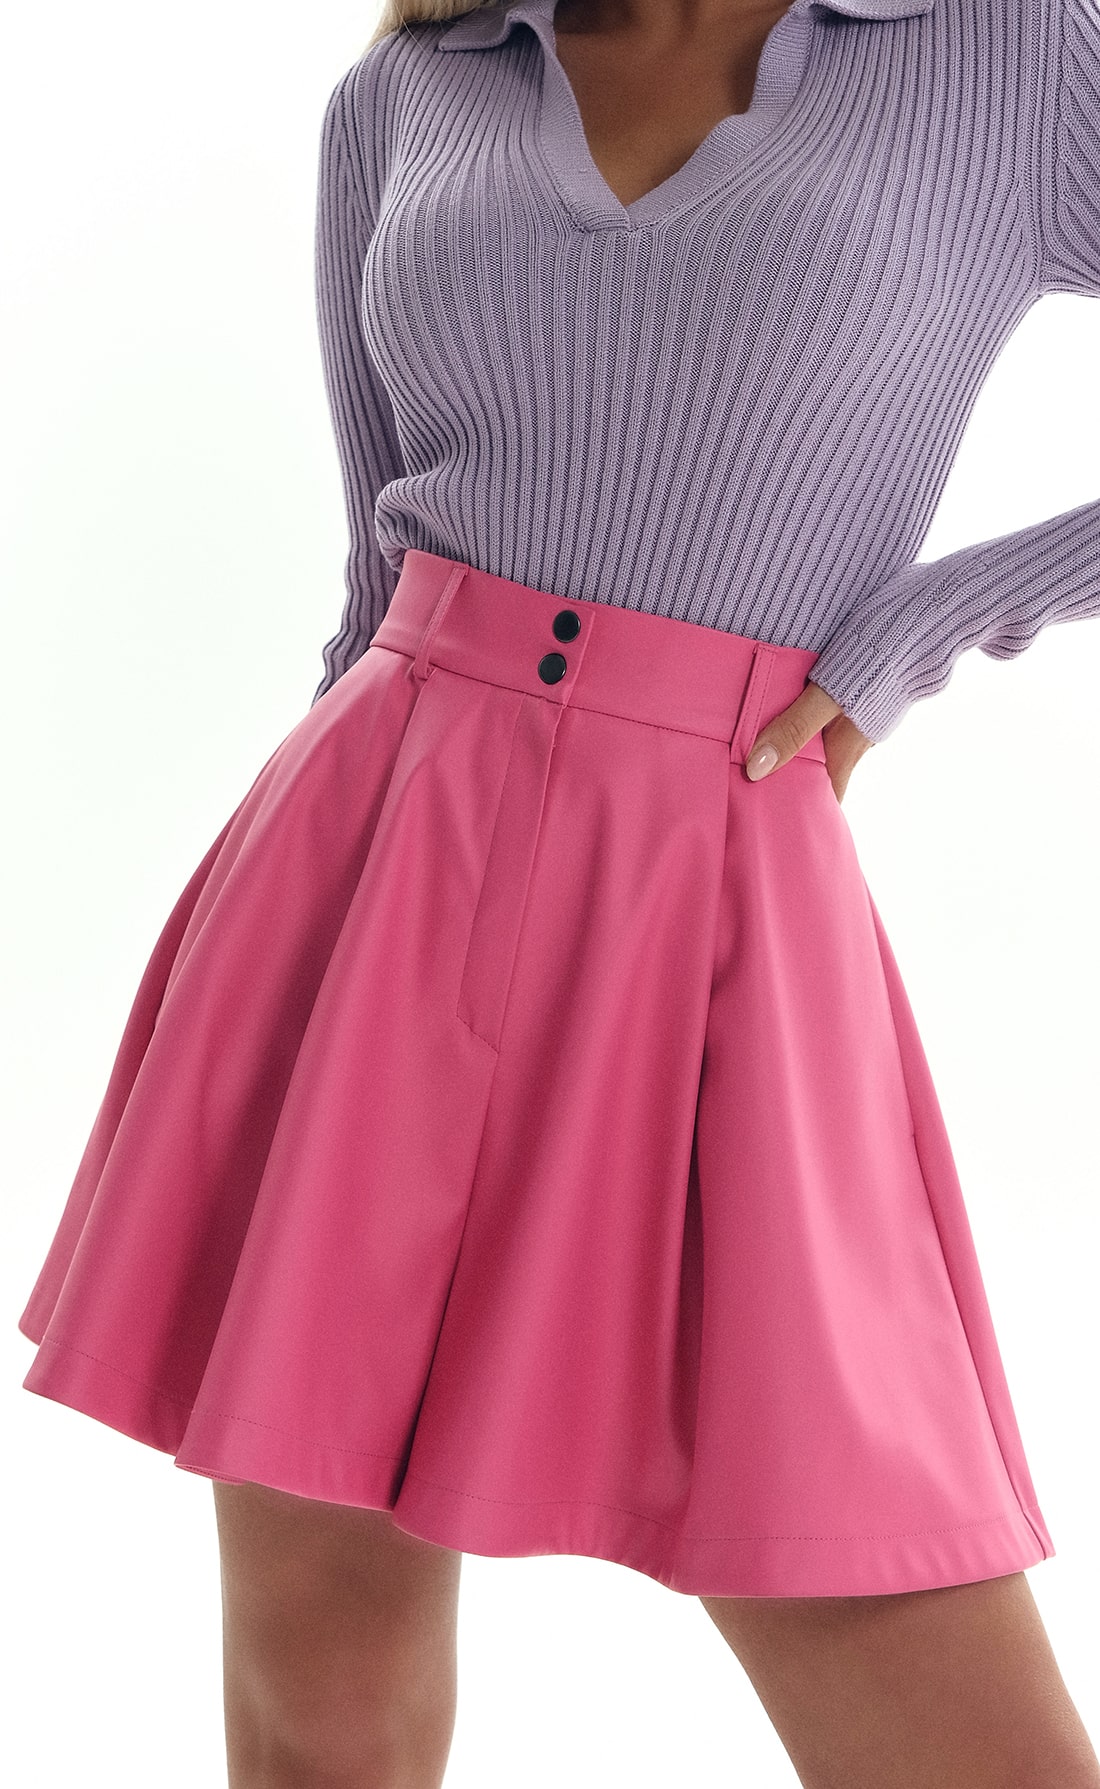 Шорты-юбка эко-кожа розовый, Размер: 40 XS